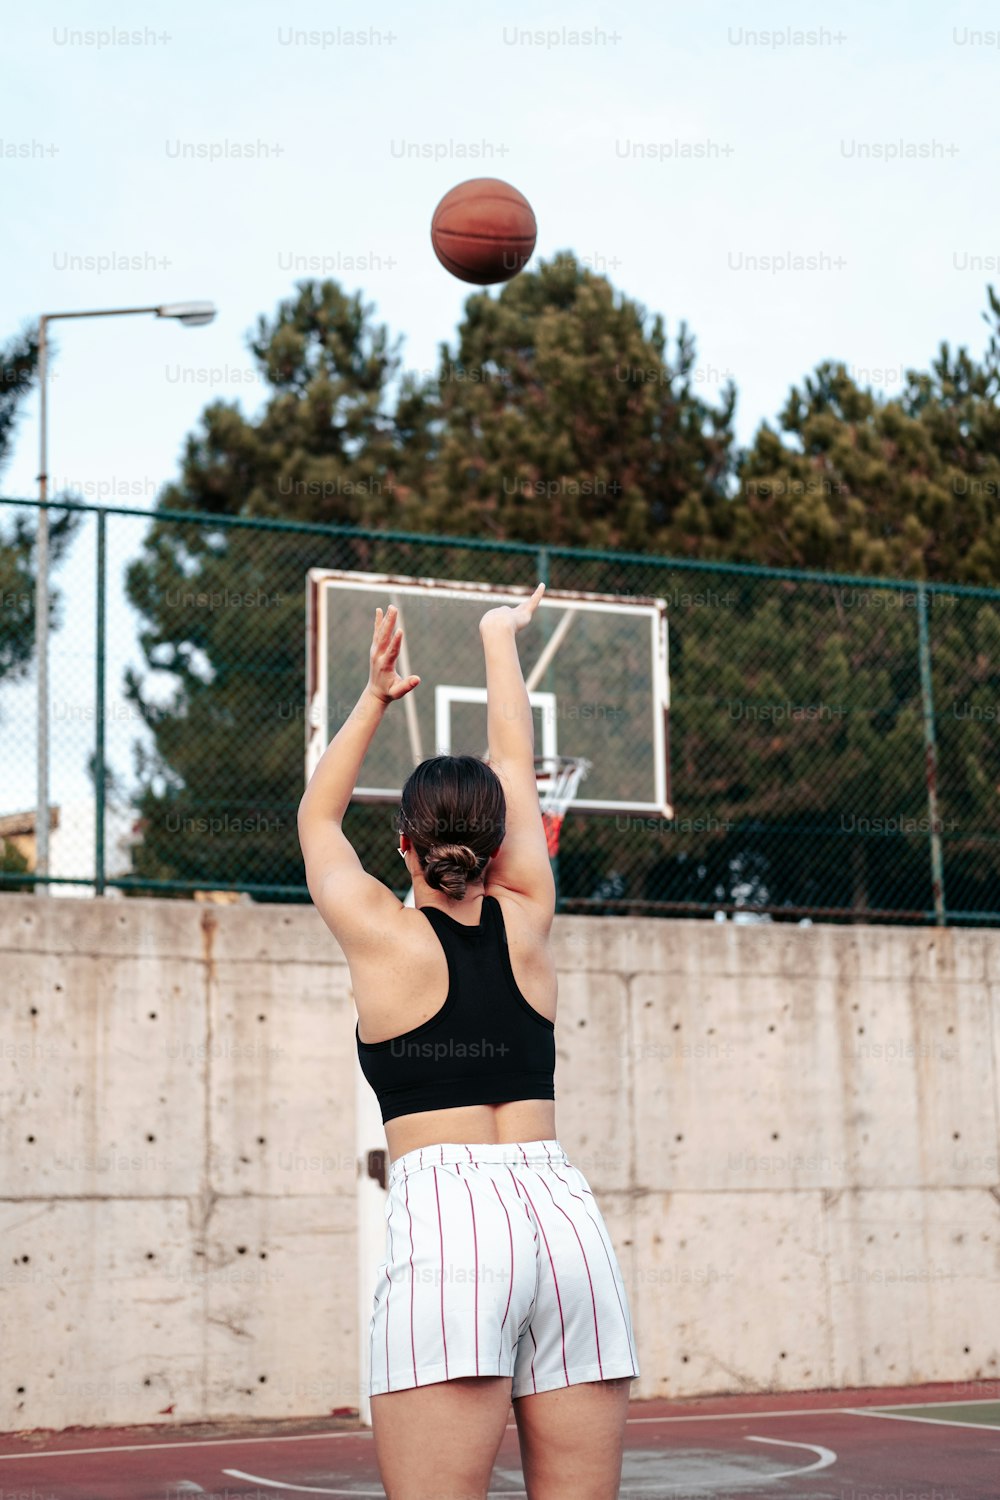 Une femme debout sur un terrain de basket-ball tenant un ballon de basket-ball